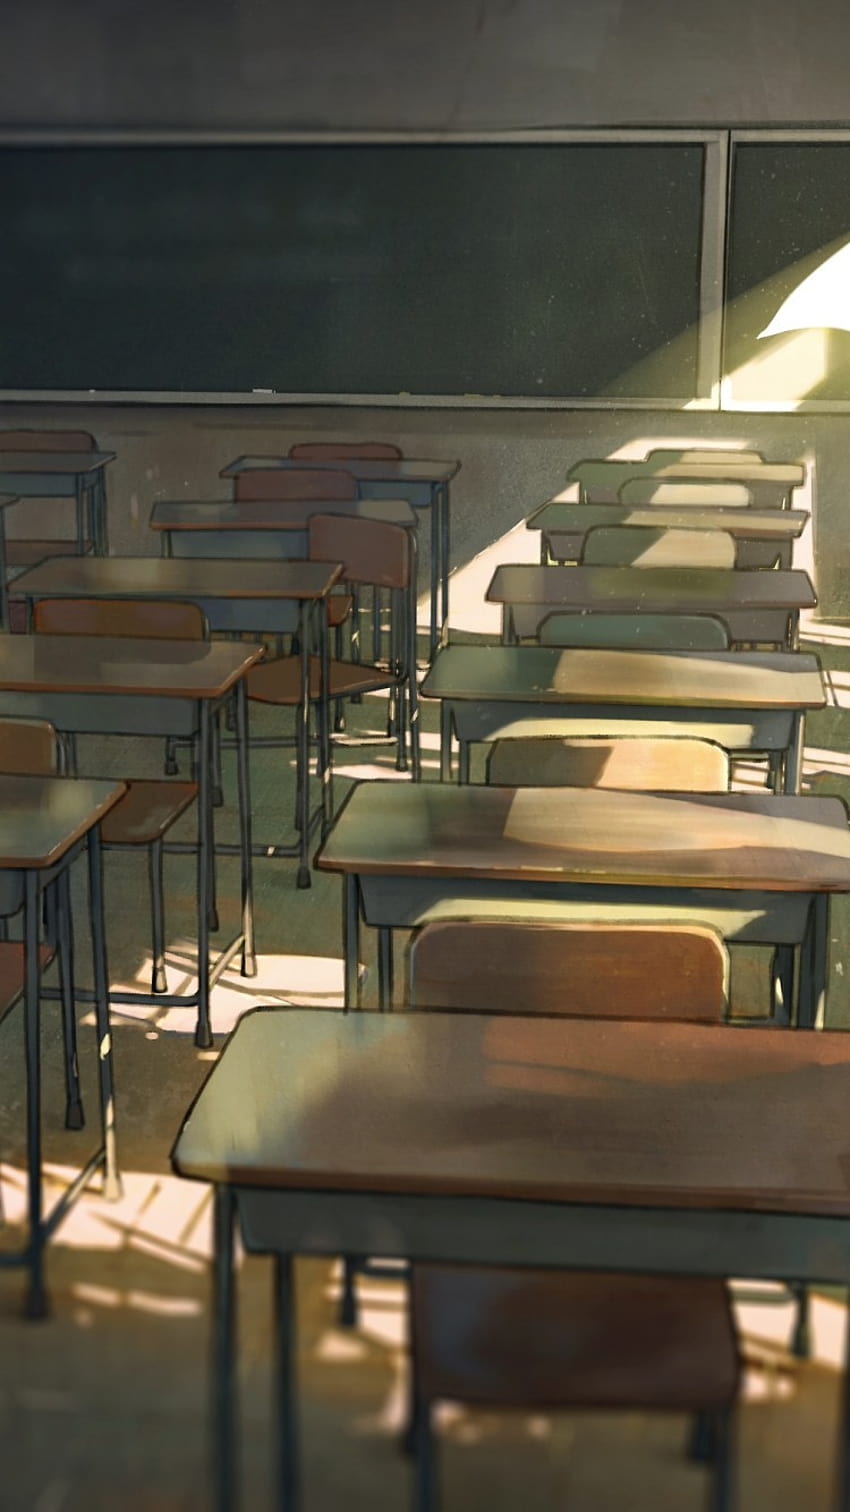 Bàn ghế, gió, thiếu niên cô đơn - tất cả được thể hiện tuyệt vời trong bức hình nền anime về phòng học. Bạn sẽ bị cuốn vào câu chuyện của chàng trai đơn độc, cùng với cảm giác bình yên nhưng không kém phần xúc động. Hãy tải ngay để cảm nhận và tận hưởng.